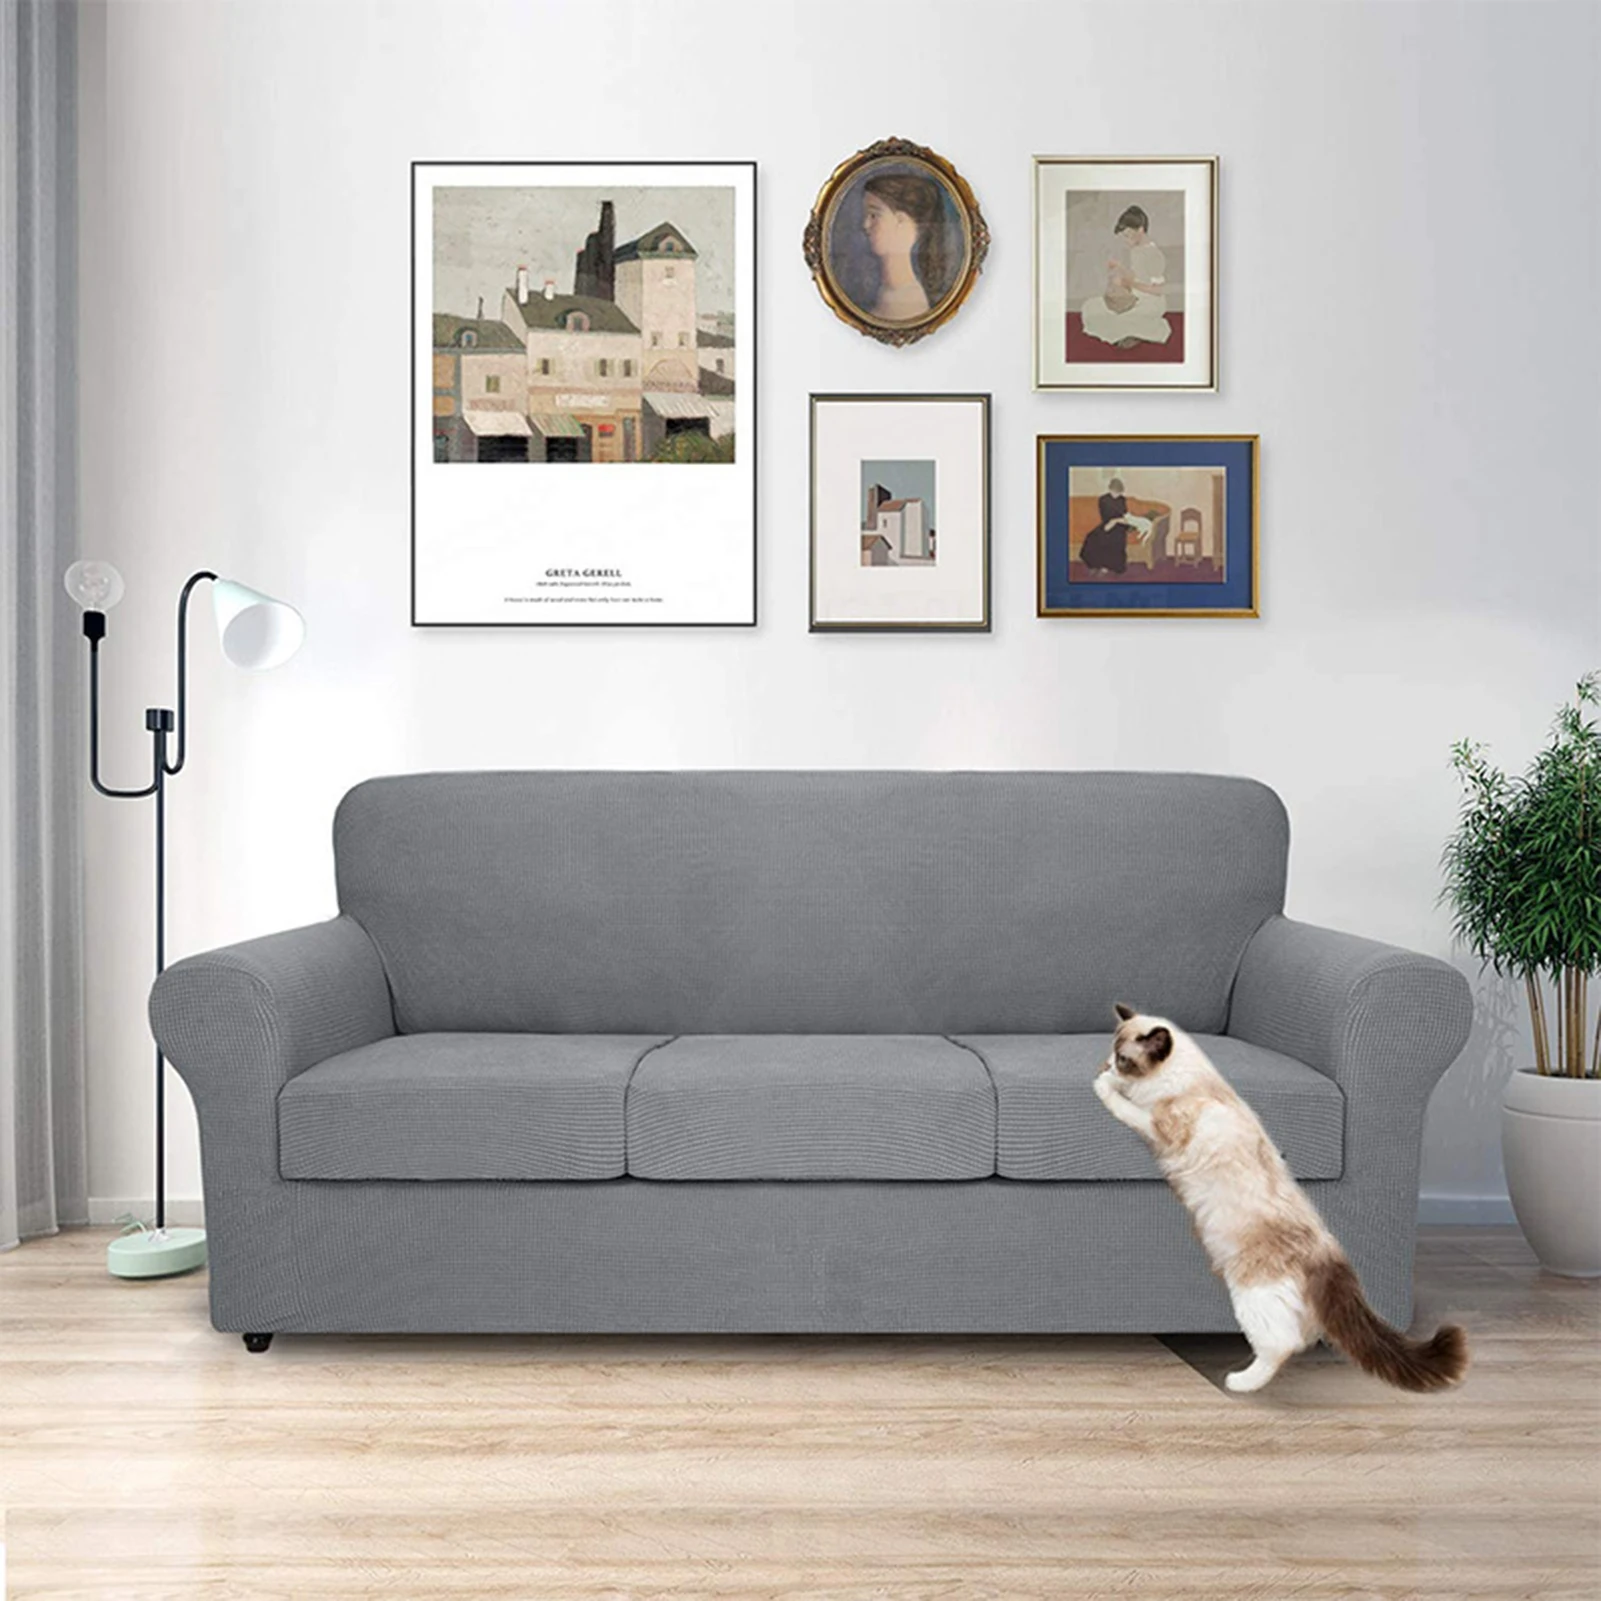 4 шт., Чехол для дивана из эластичной текстурированной сетки, Мягкий чехол для дивана, Моющиеся Чехлы для мебели для собак, домашних животных, детей 5